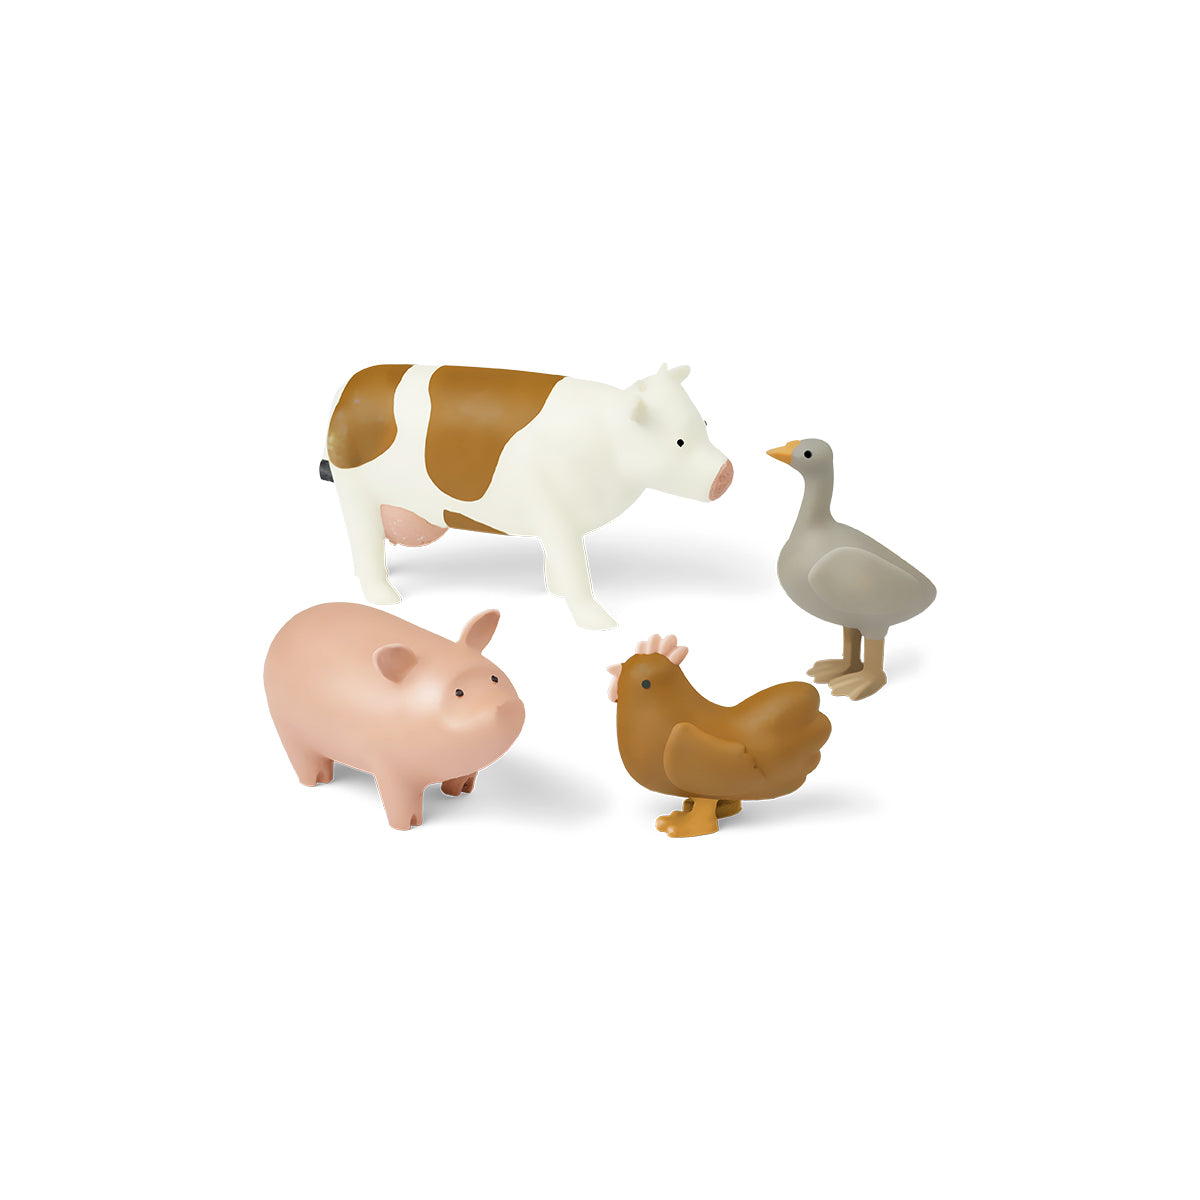 Laat de fantasie van je kind de vrije loop met Liewood hallie boerderijdieren 4-pack. Deze set met boerderijdieren bestaat uit vier dieren: een gans, een kip, een varken en een koe. VanZus.